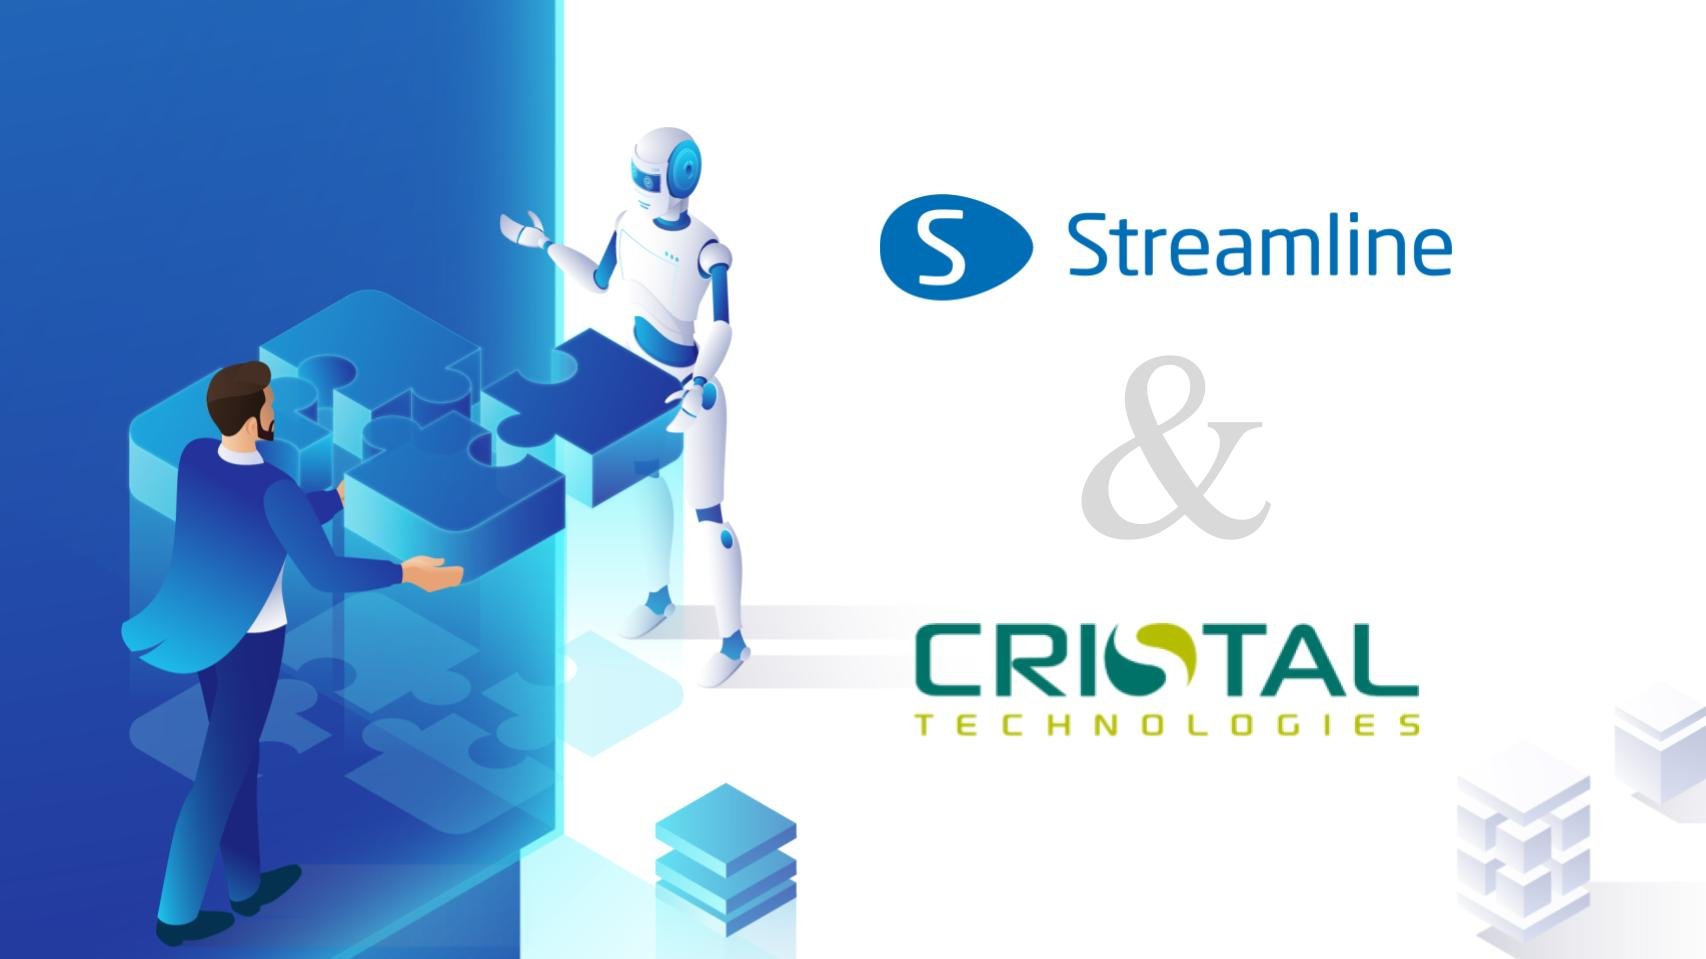 GMDH Streamline และ Cristal Technologies ประกาศความร่วมมือเชิงกลยุทธ์